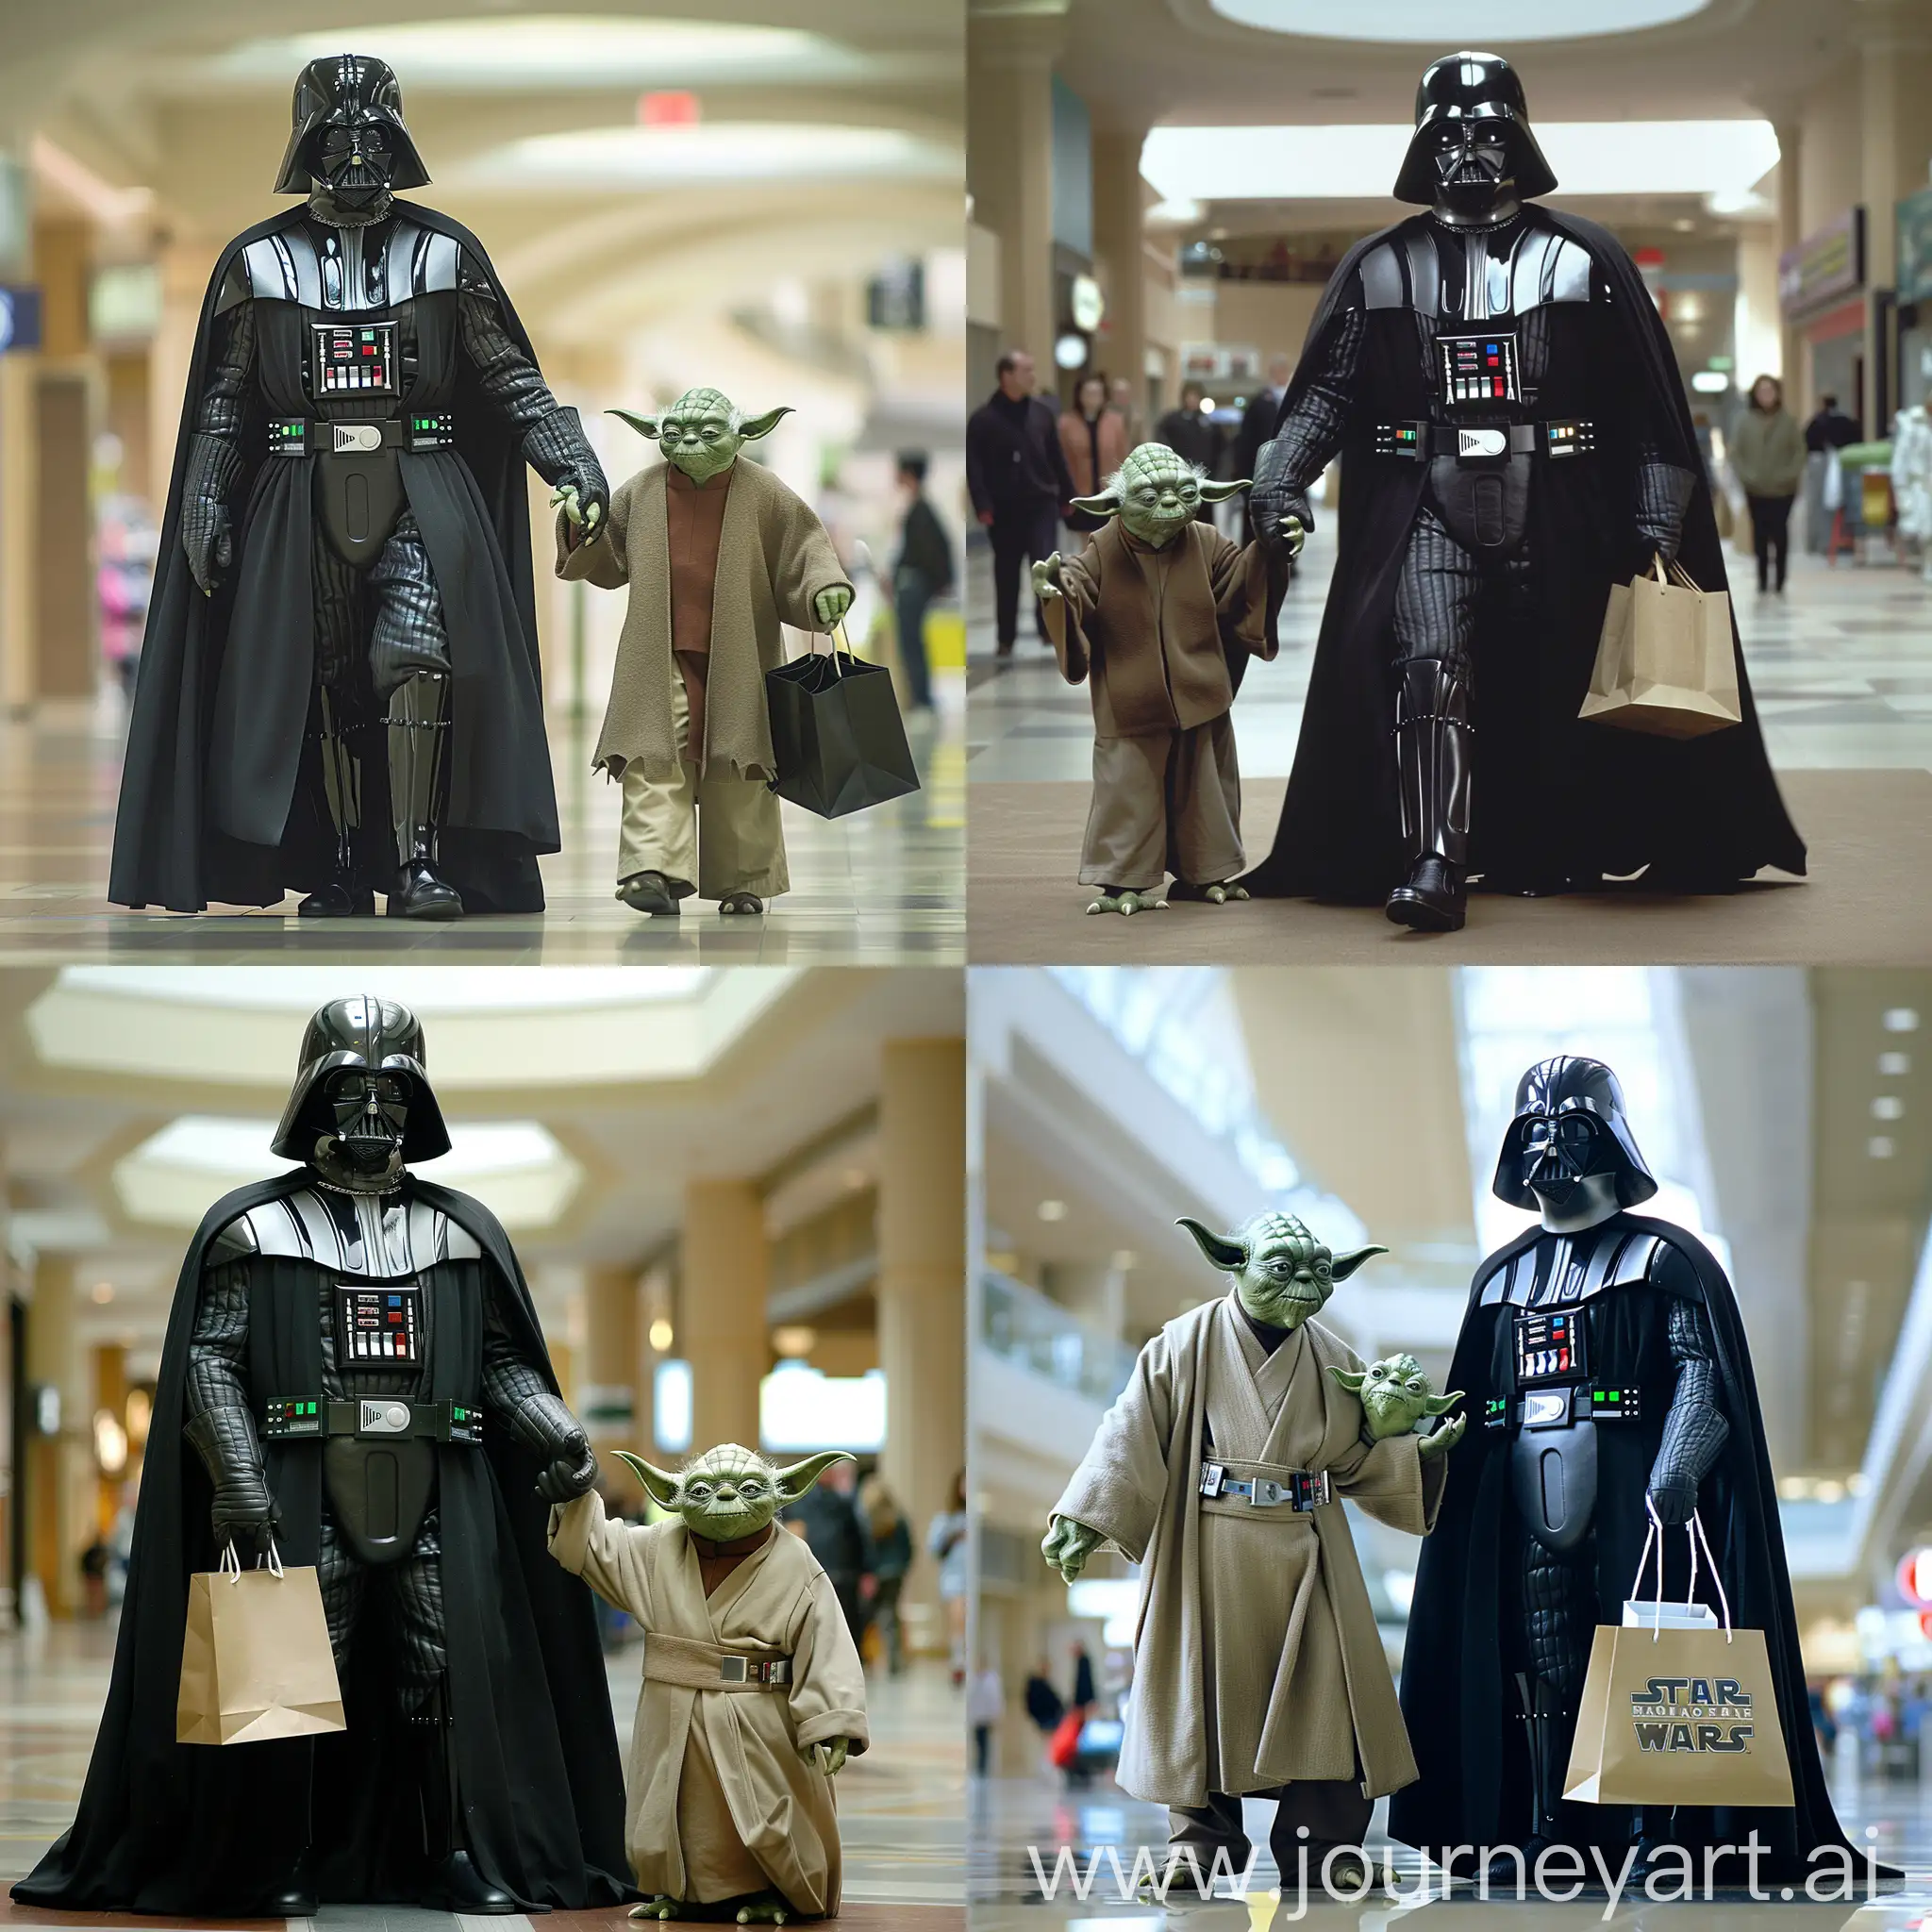 Darth Vader shopping at the mall with Yoda